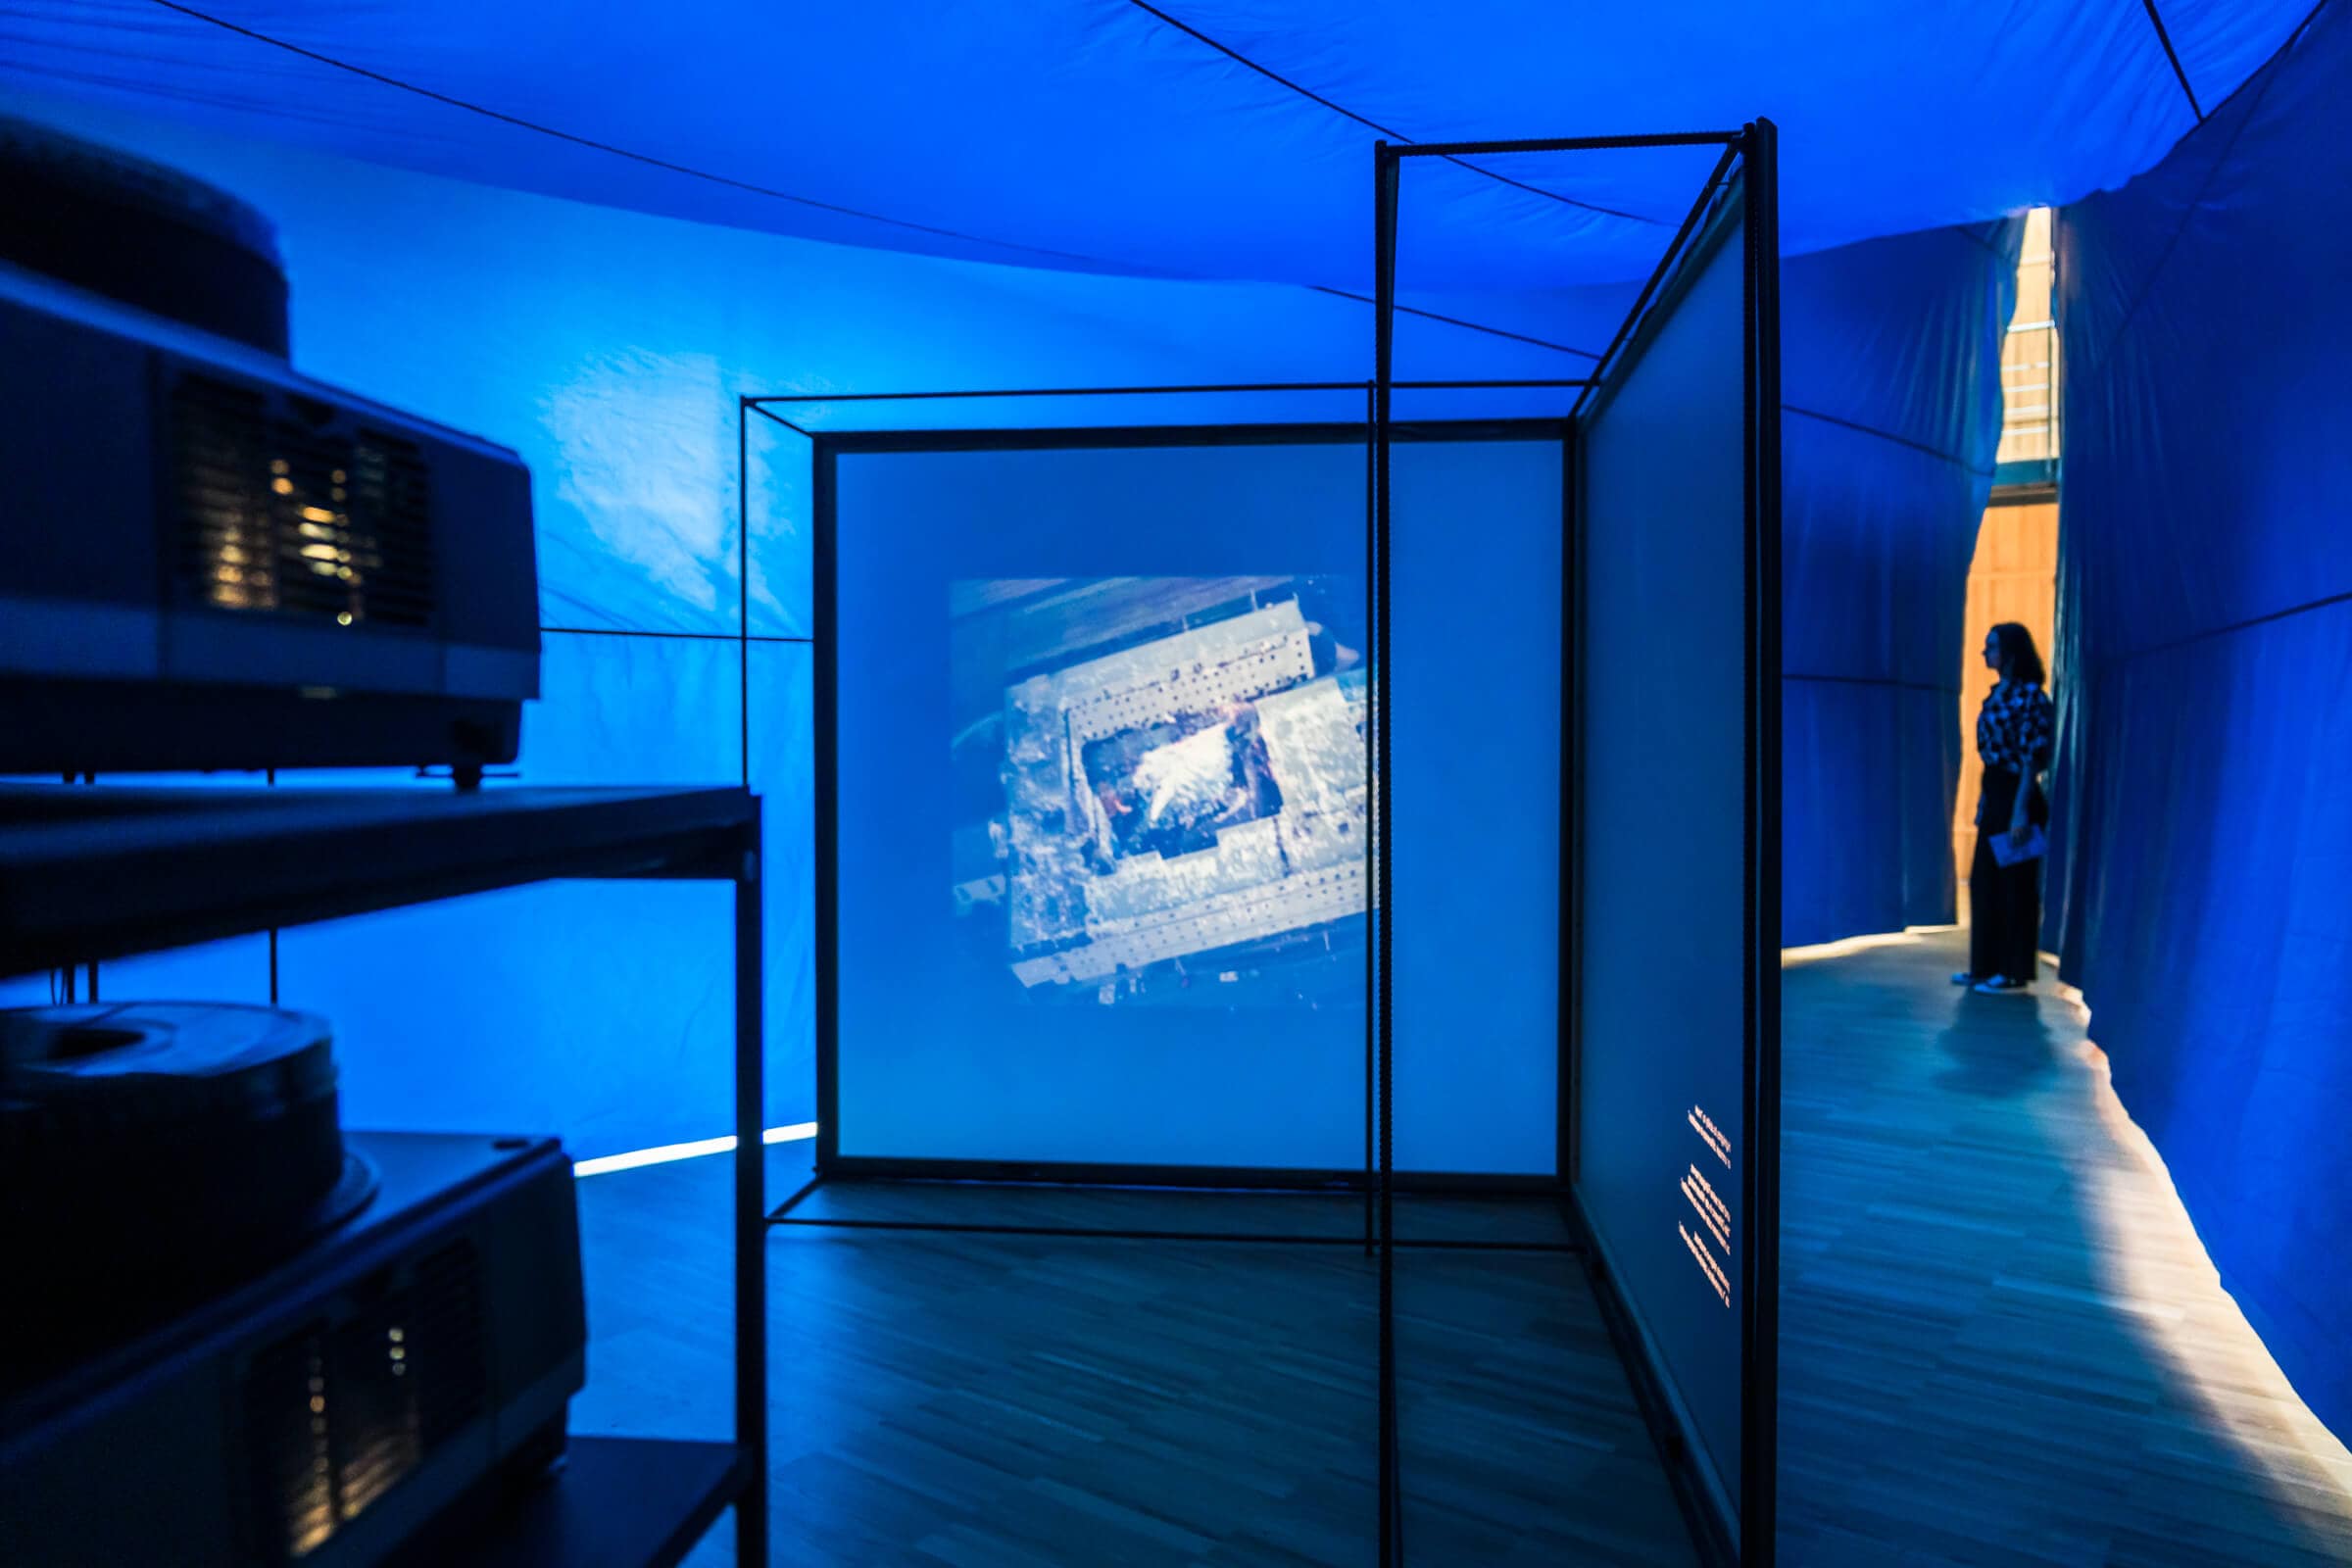 Videoprojektion bei Domenig: DIMENSIONAL Ausstellung in Klagenfurt